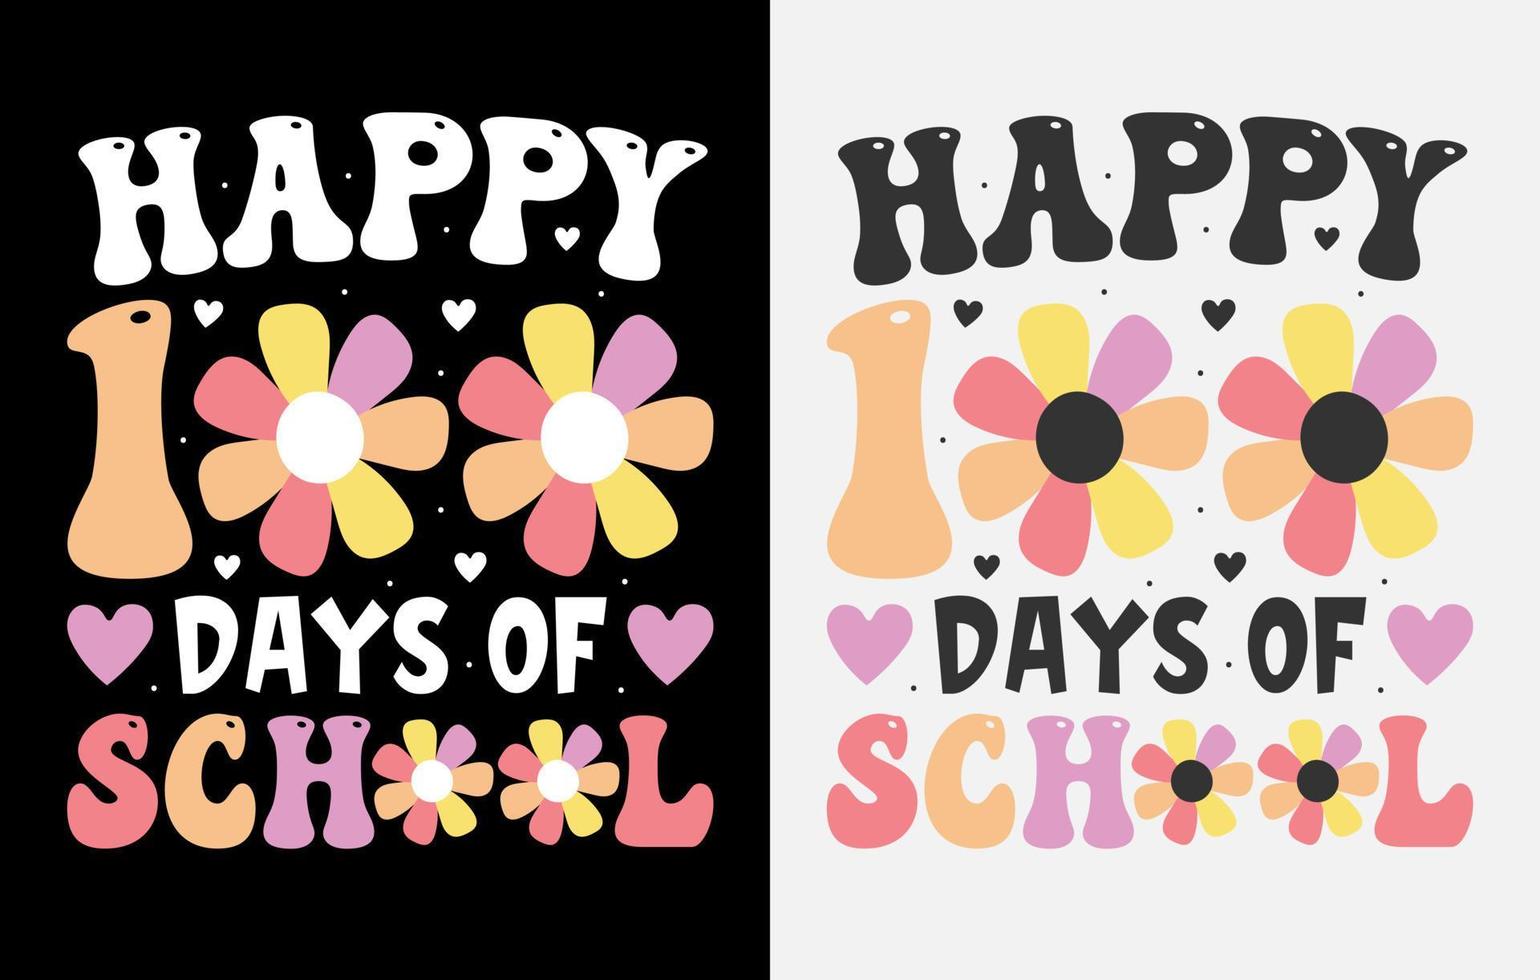 100ª dia t camisa livre, 100 dias do escola Camisetas, 100ª dia t camisa , feliz 100 dias camiseta, professor t camisa, vetor